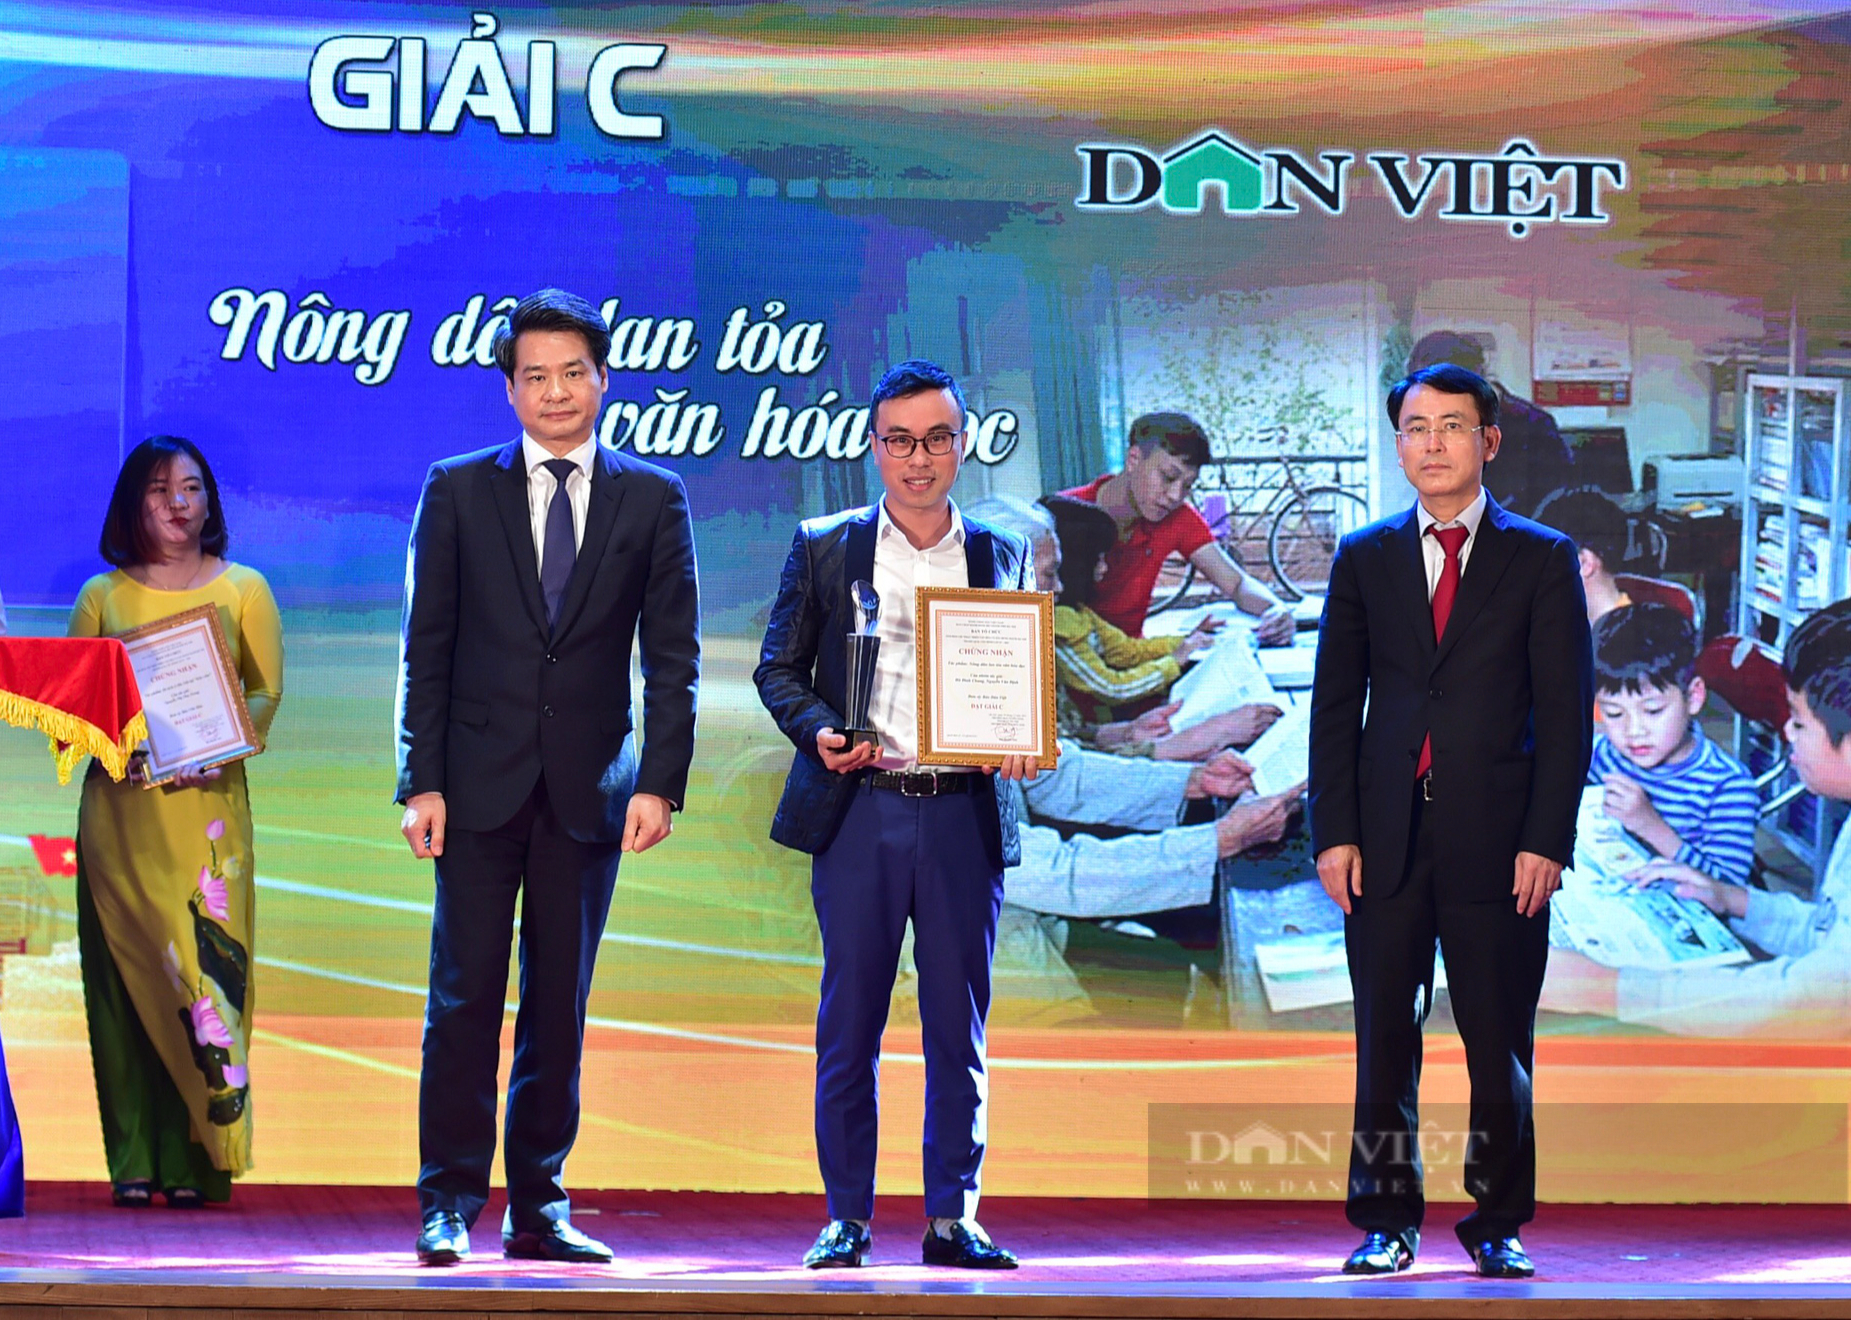 Báo Dân Việt đoạt Giải C Giải Phát triển văn hóa và xây dựng người Hà Nội - Ảnh 3.